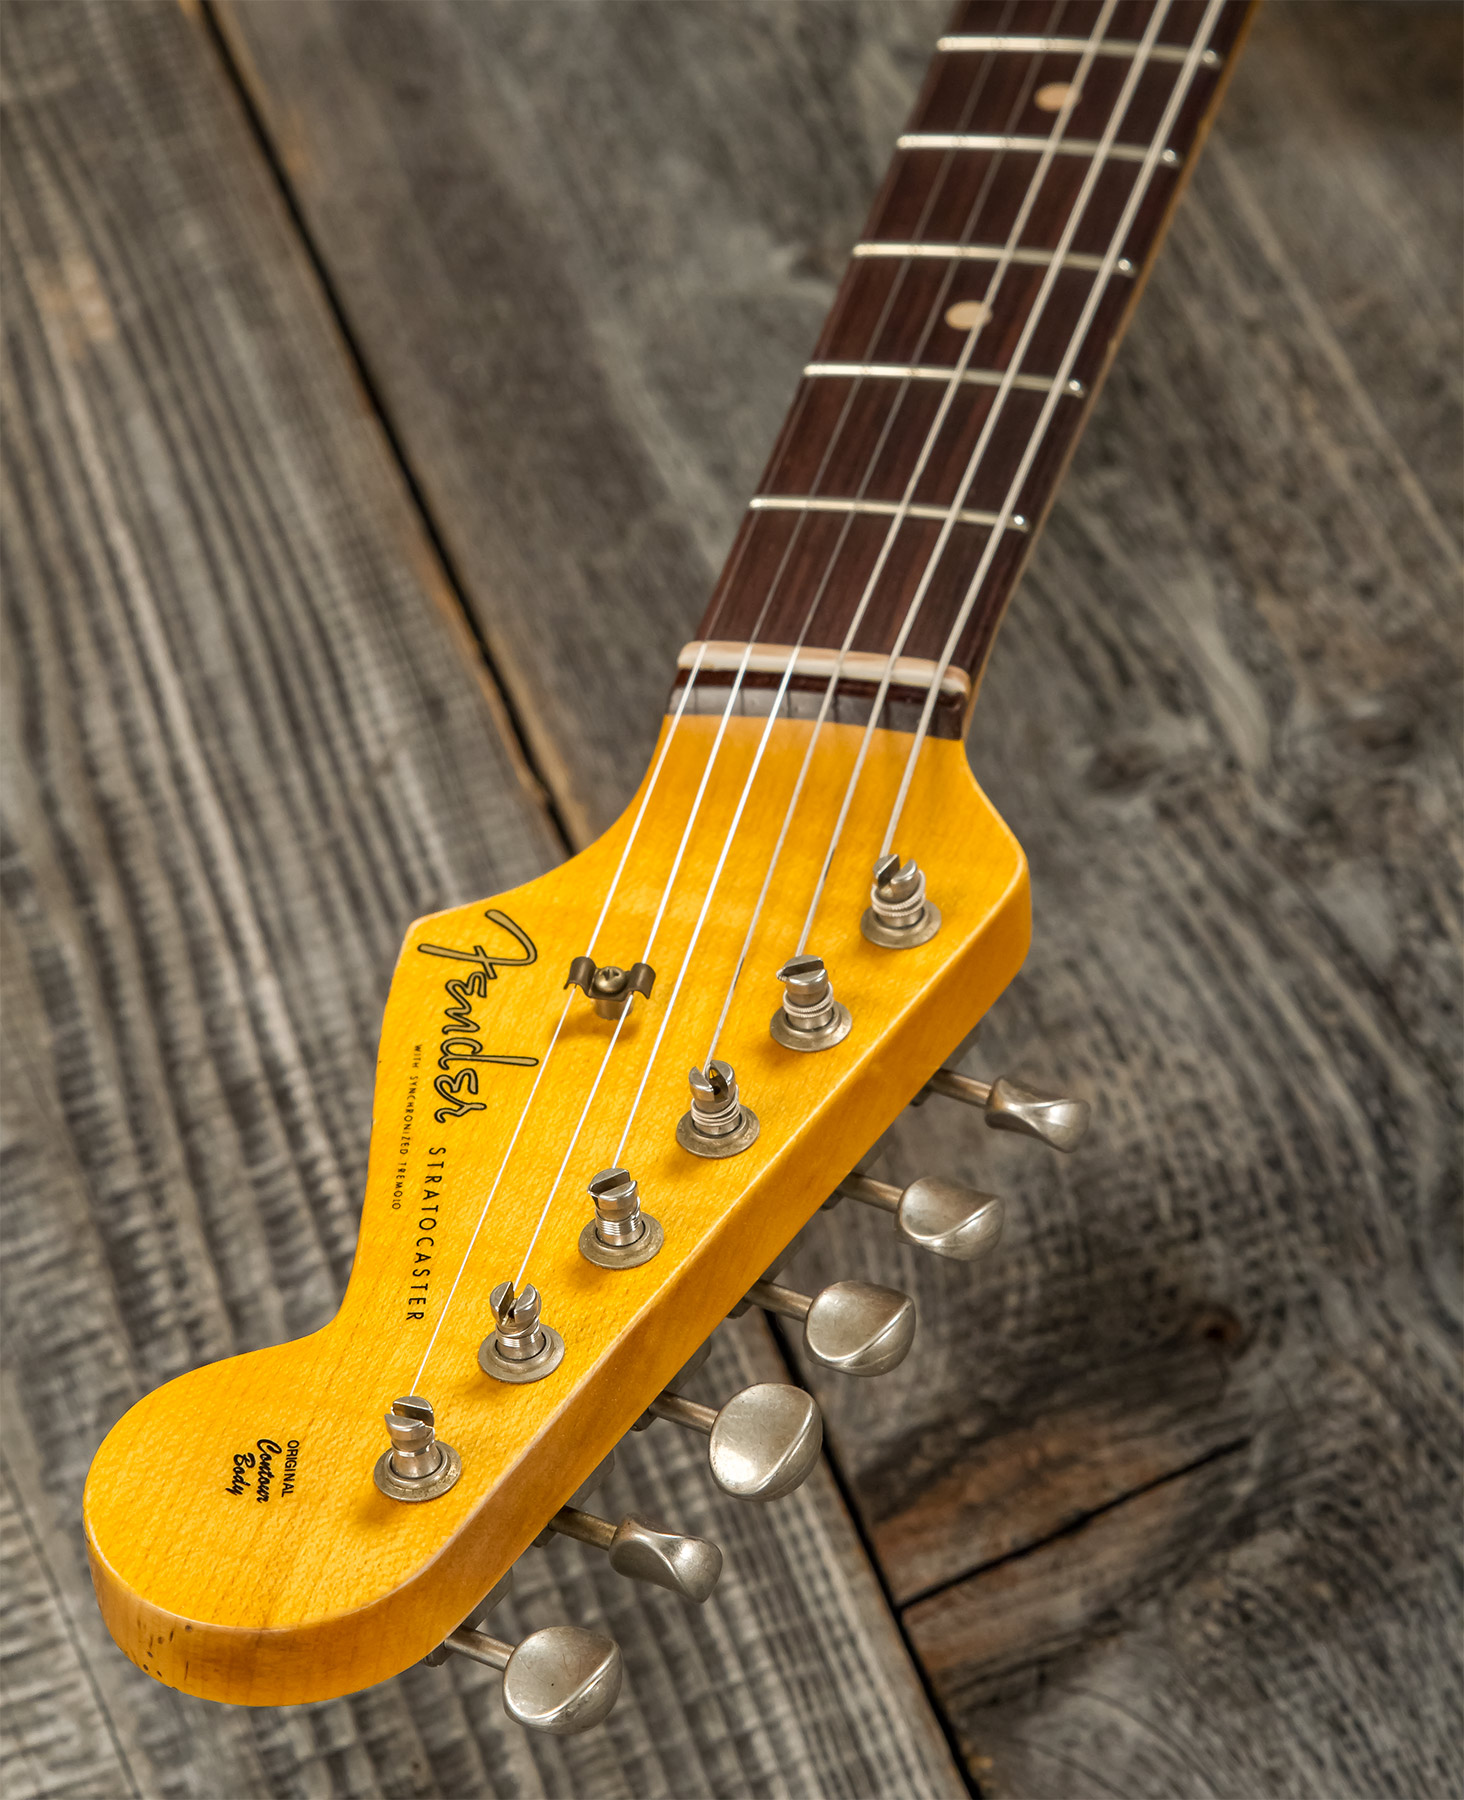 Fender Custom Shop Strat 1959 3s Trem Rw #r117393 - Relic Aged Vintage White - Str shape electric guitar - Variation 8